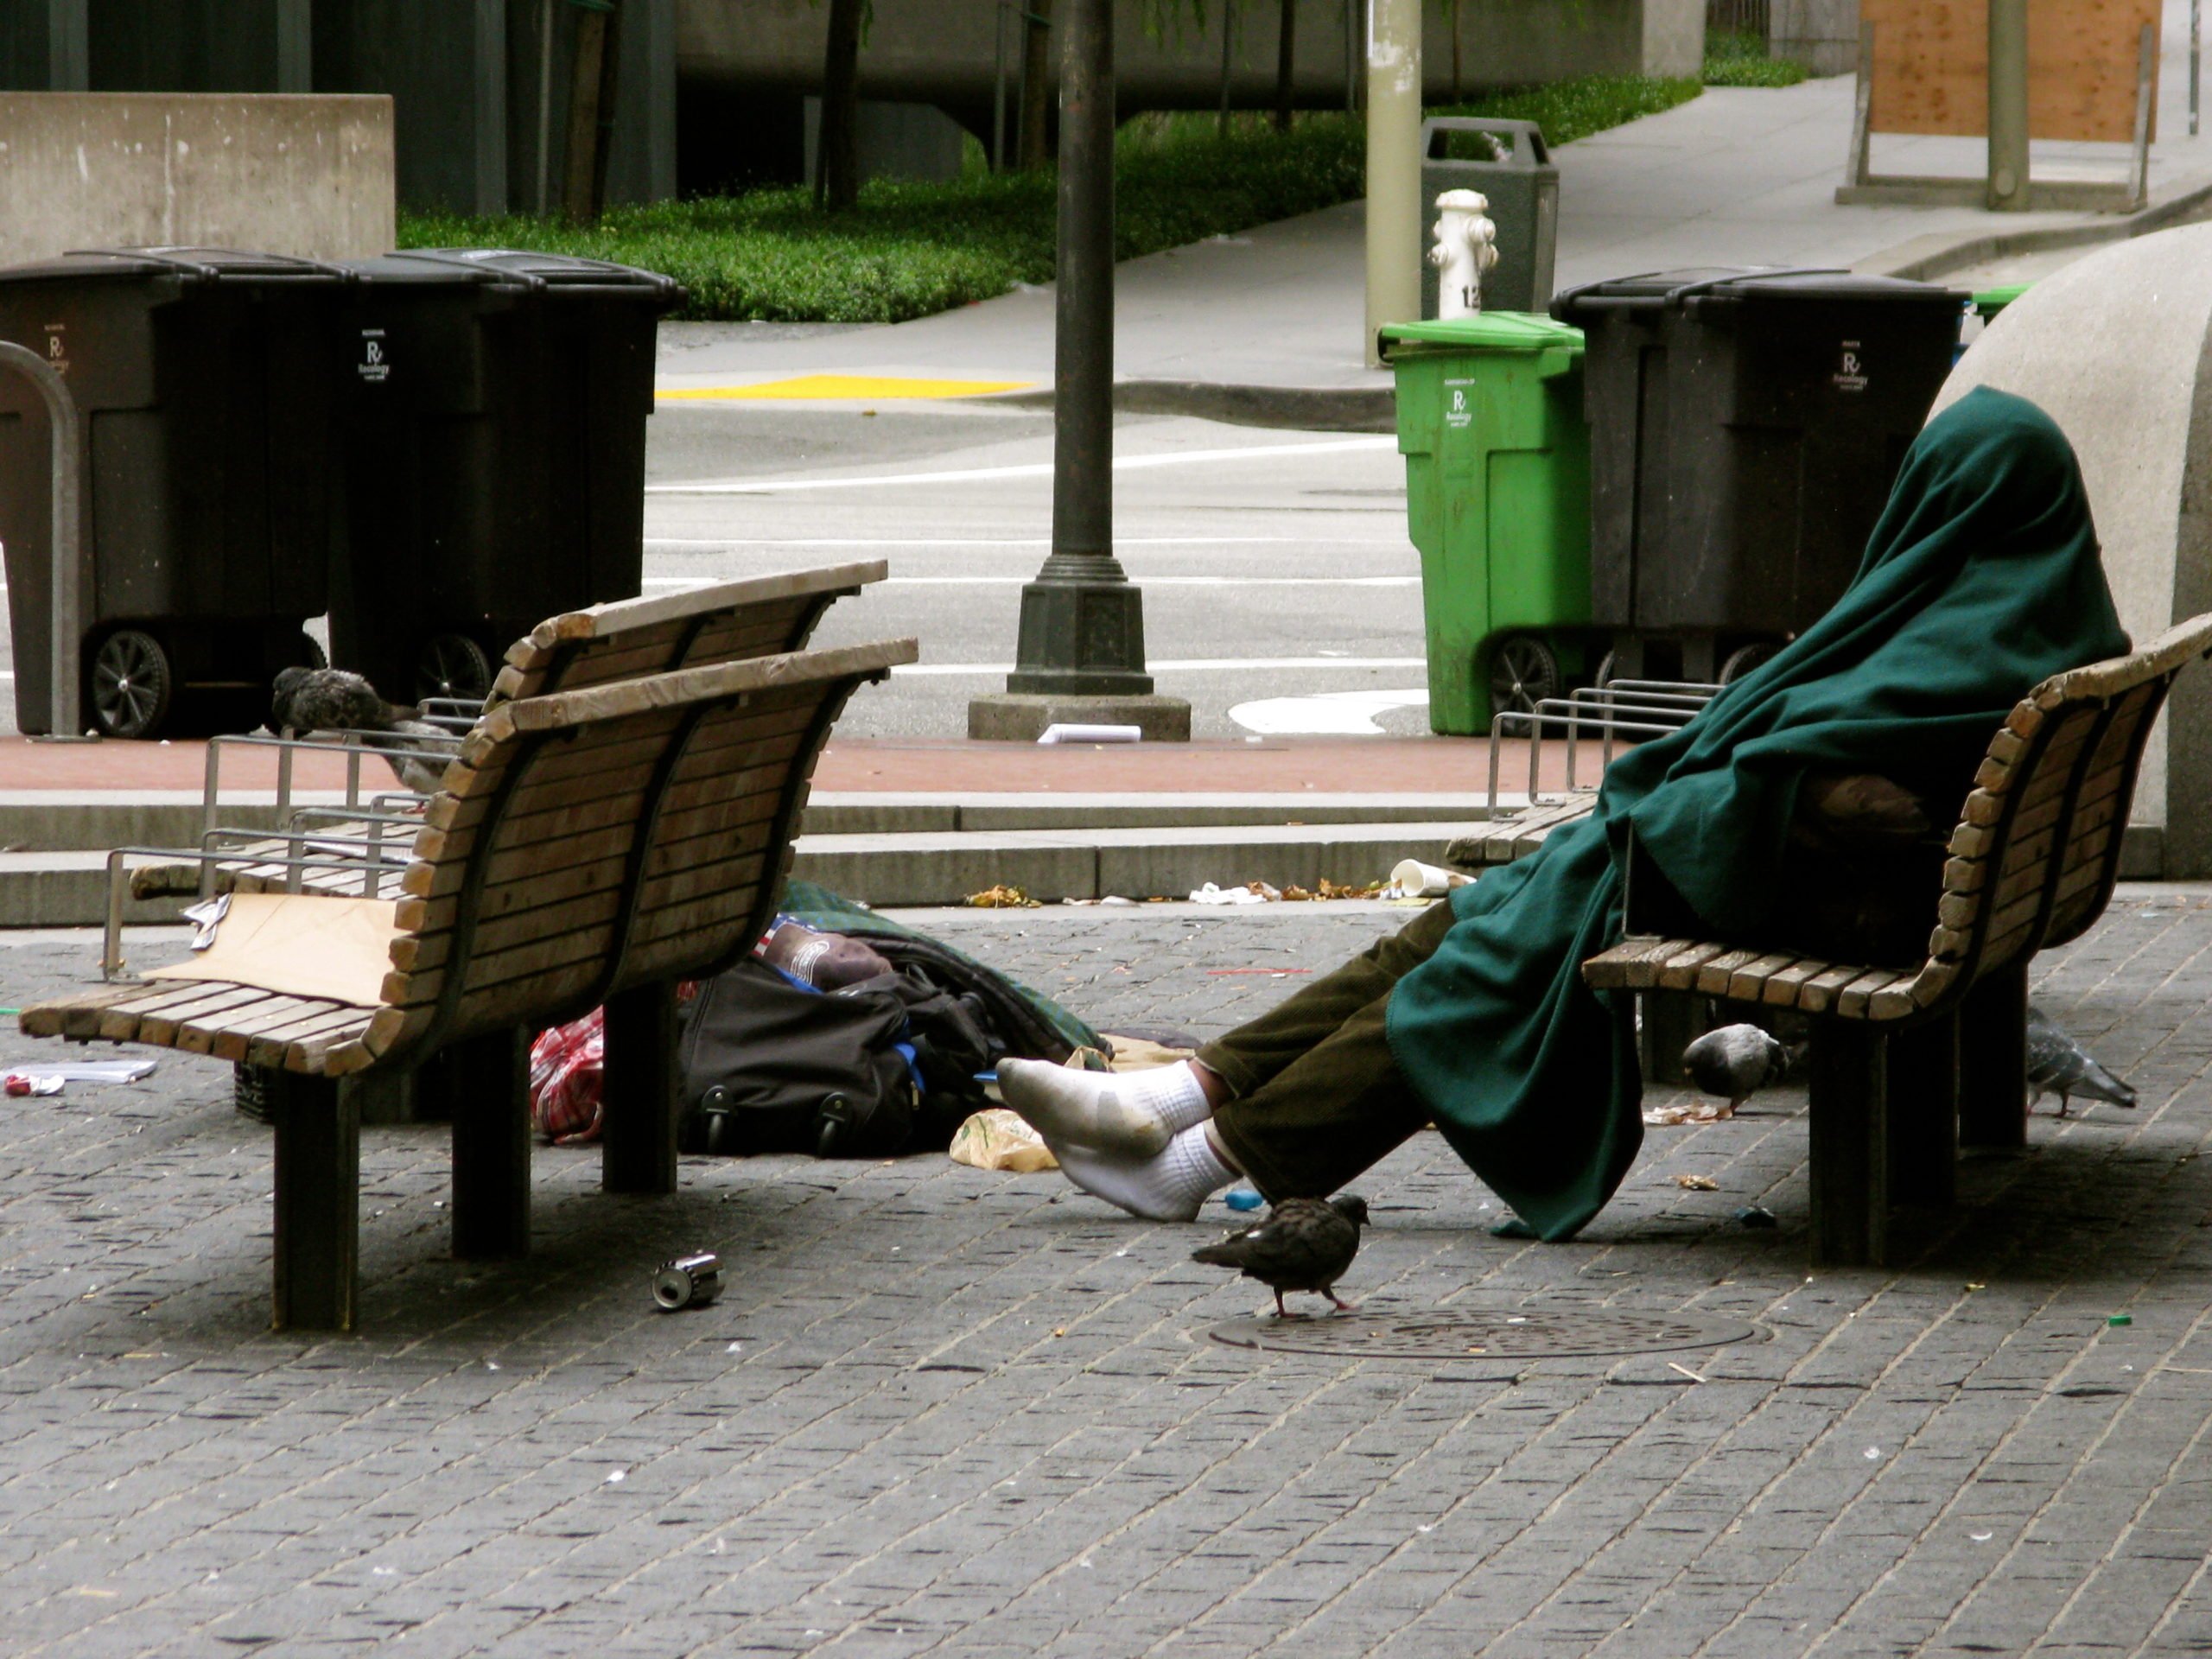 Σε ποια πόλη “ξήλωσαν” τα παγκάκια για να μη κοιμούνται οι άστεγοι